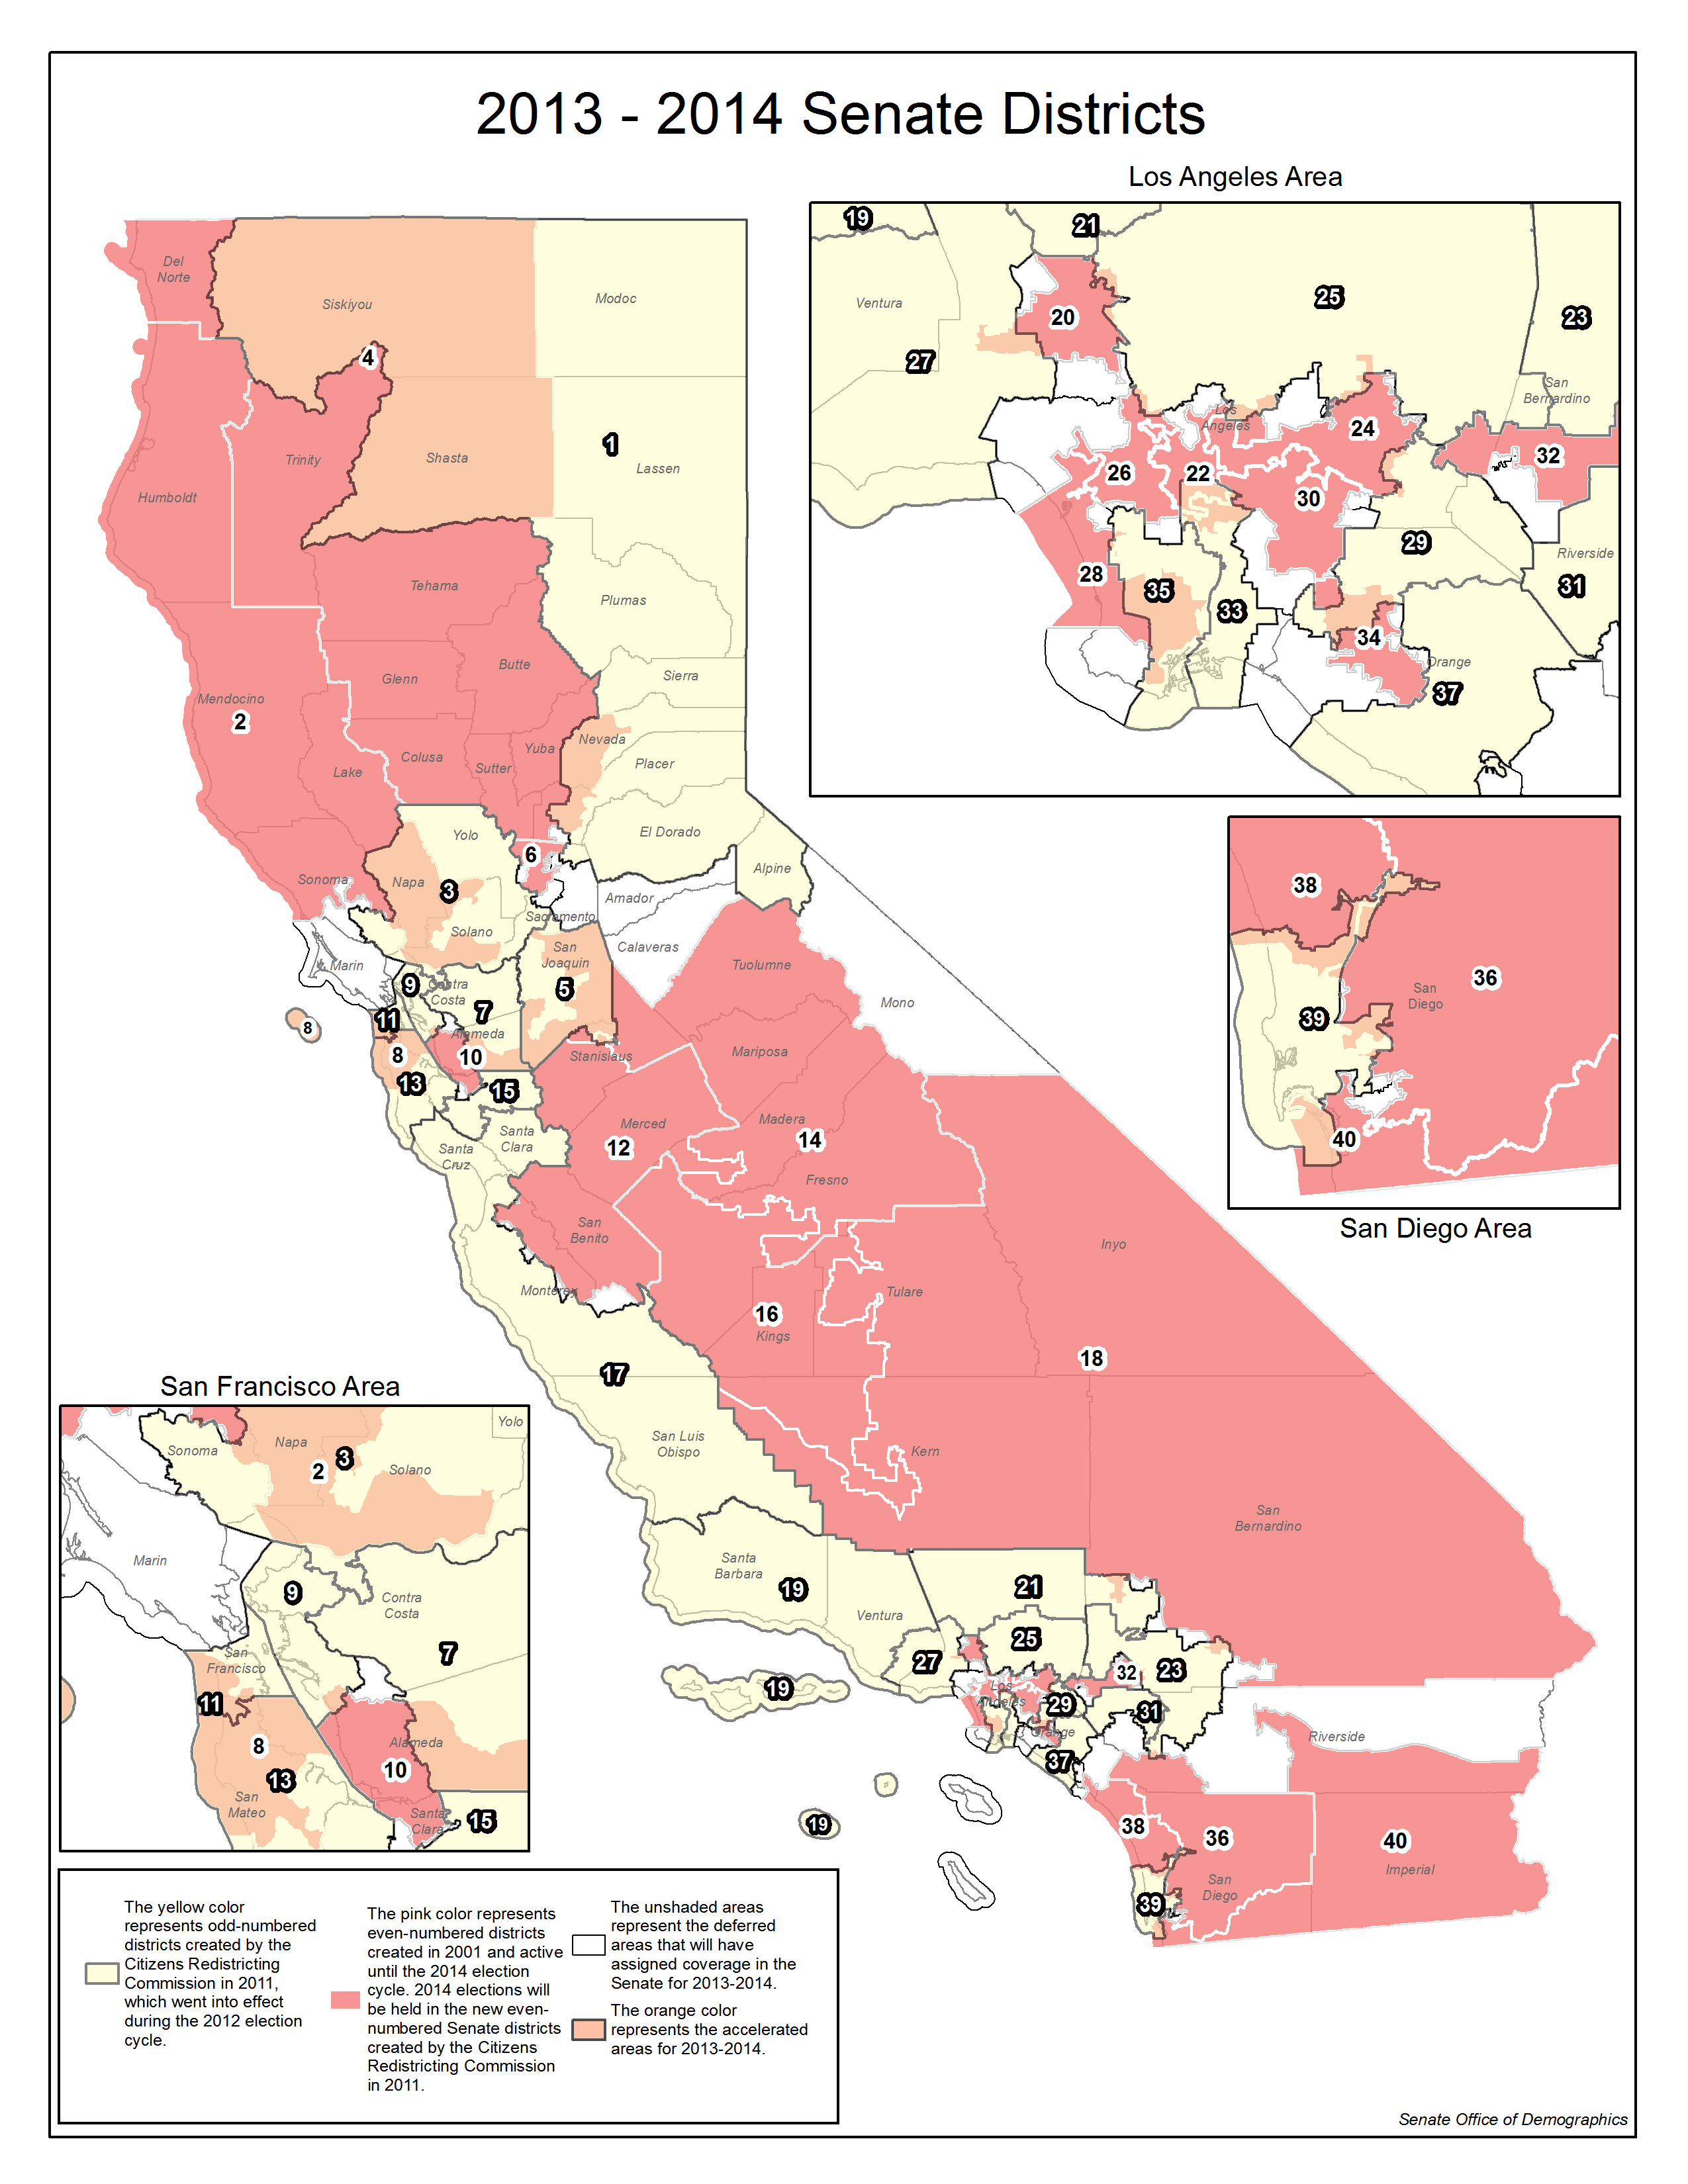 2013-2014 Senate District Map